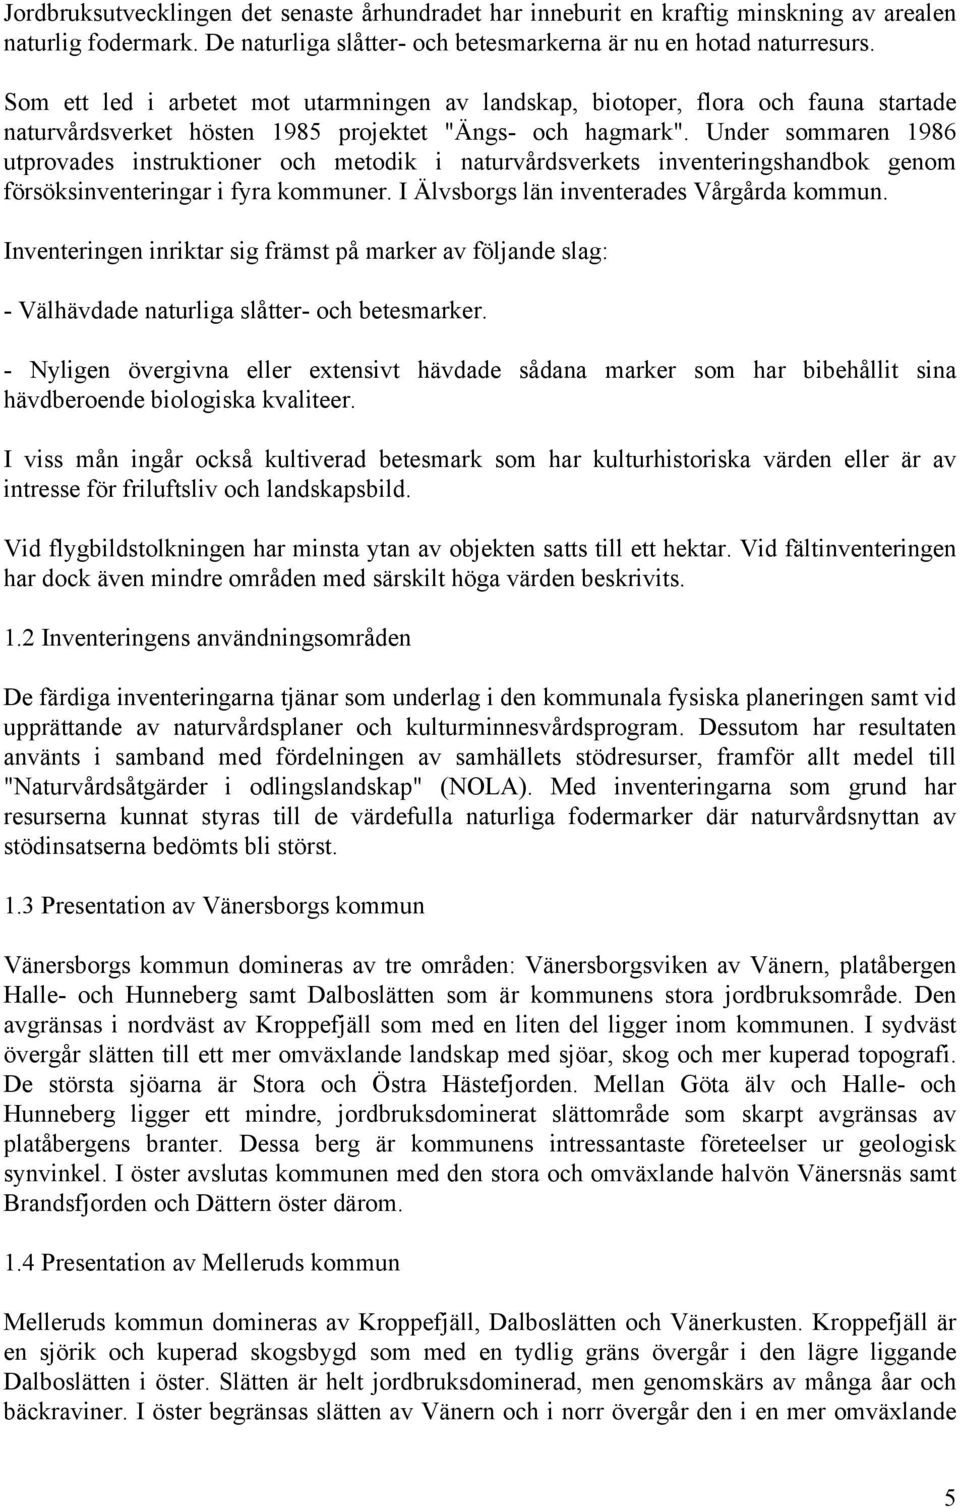 Under sommaren 1986 utprovades instruktioner och metodik i naturvårdsverkets inventeringshandbok genom försöksinventeringar i fyra kommuner. I Älvsborgs län inventerades Vårgårda kommun.